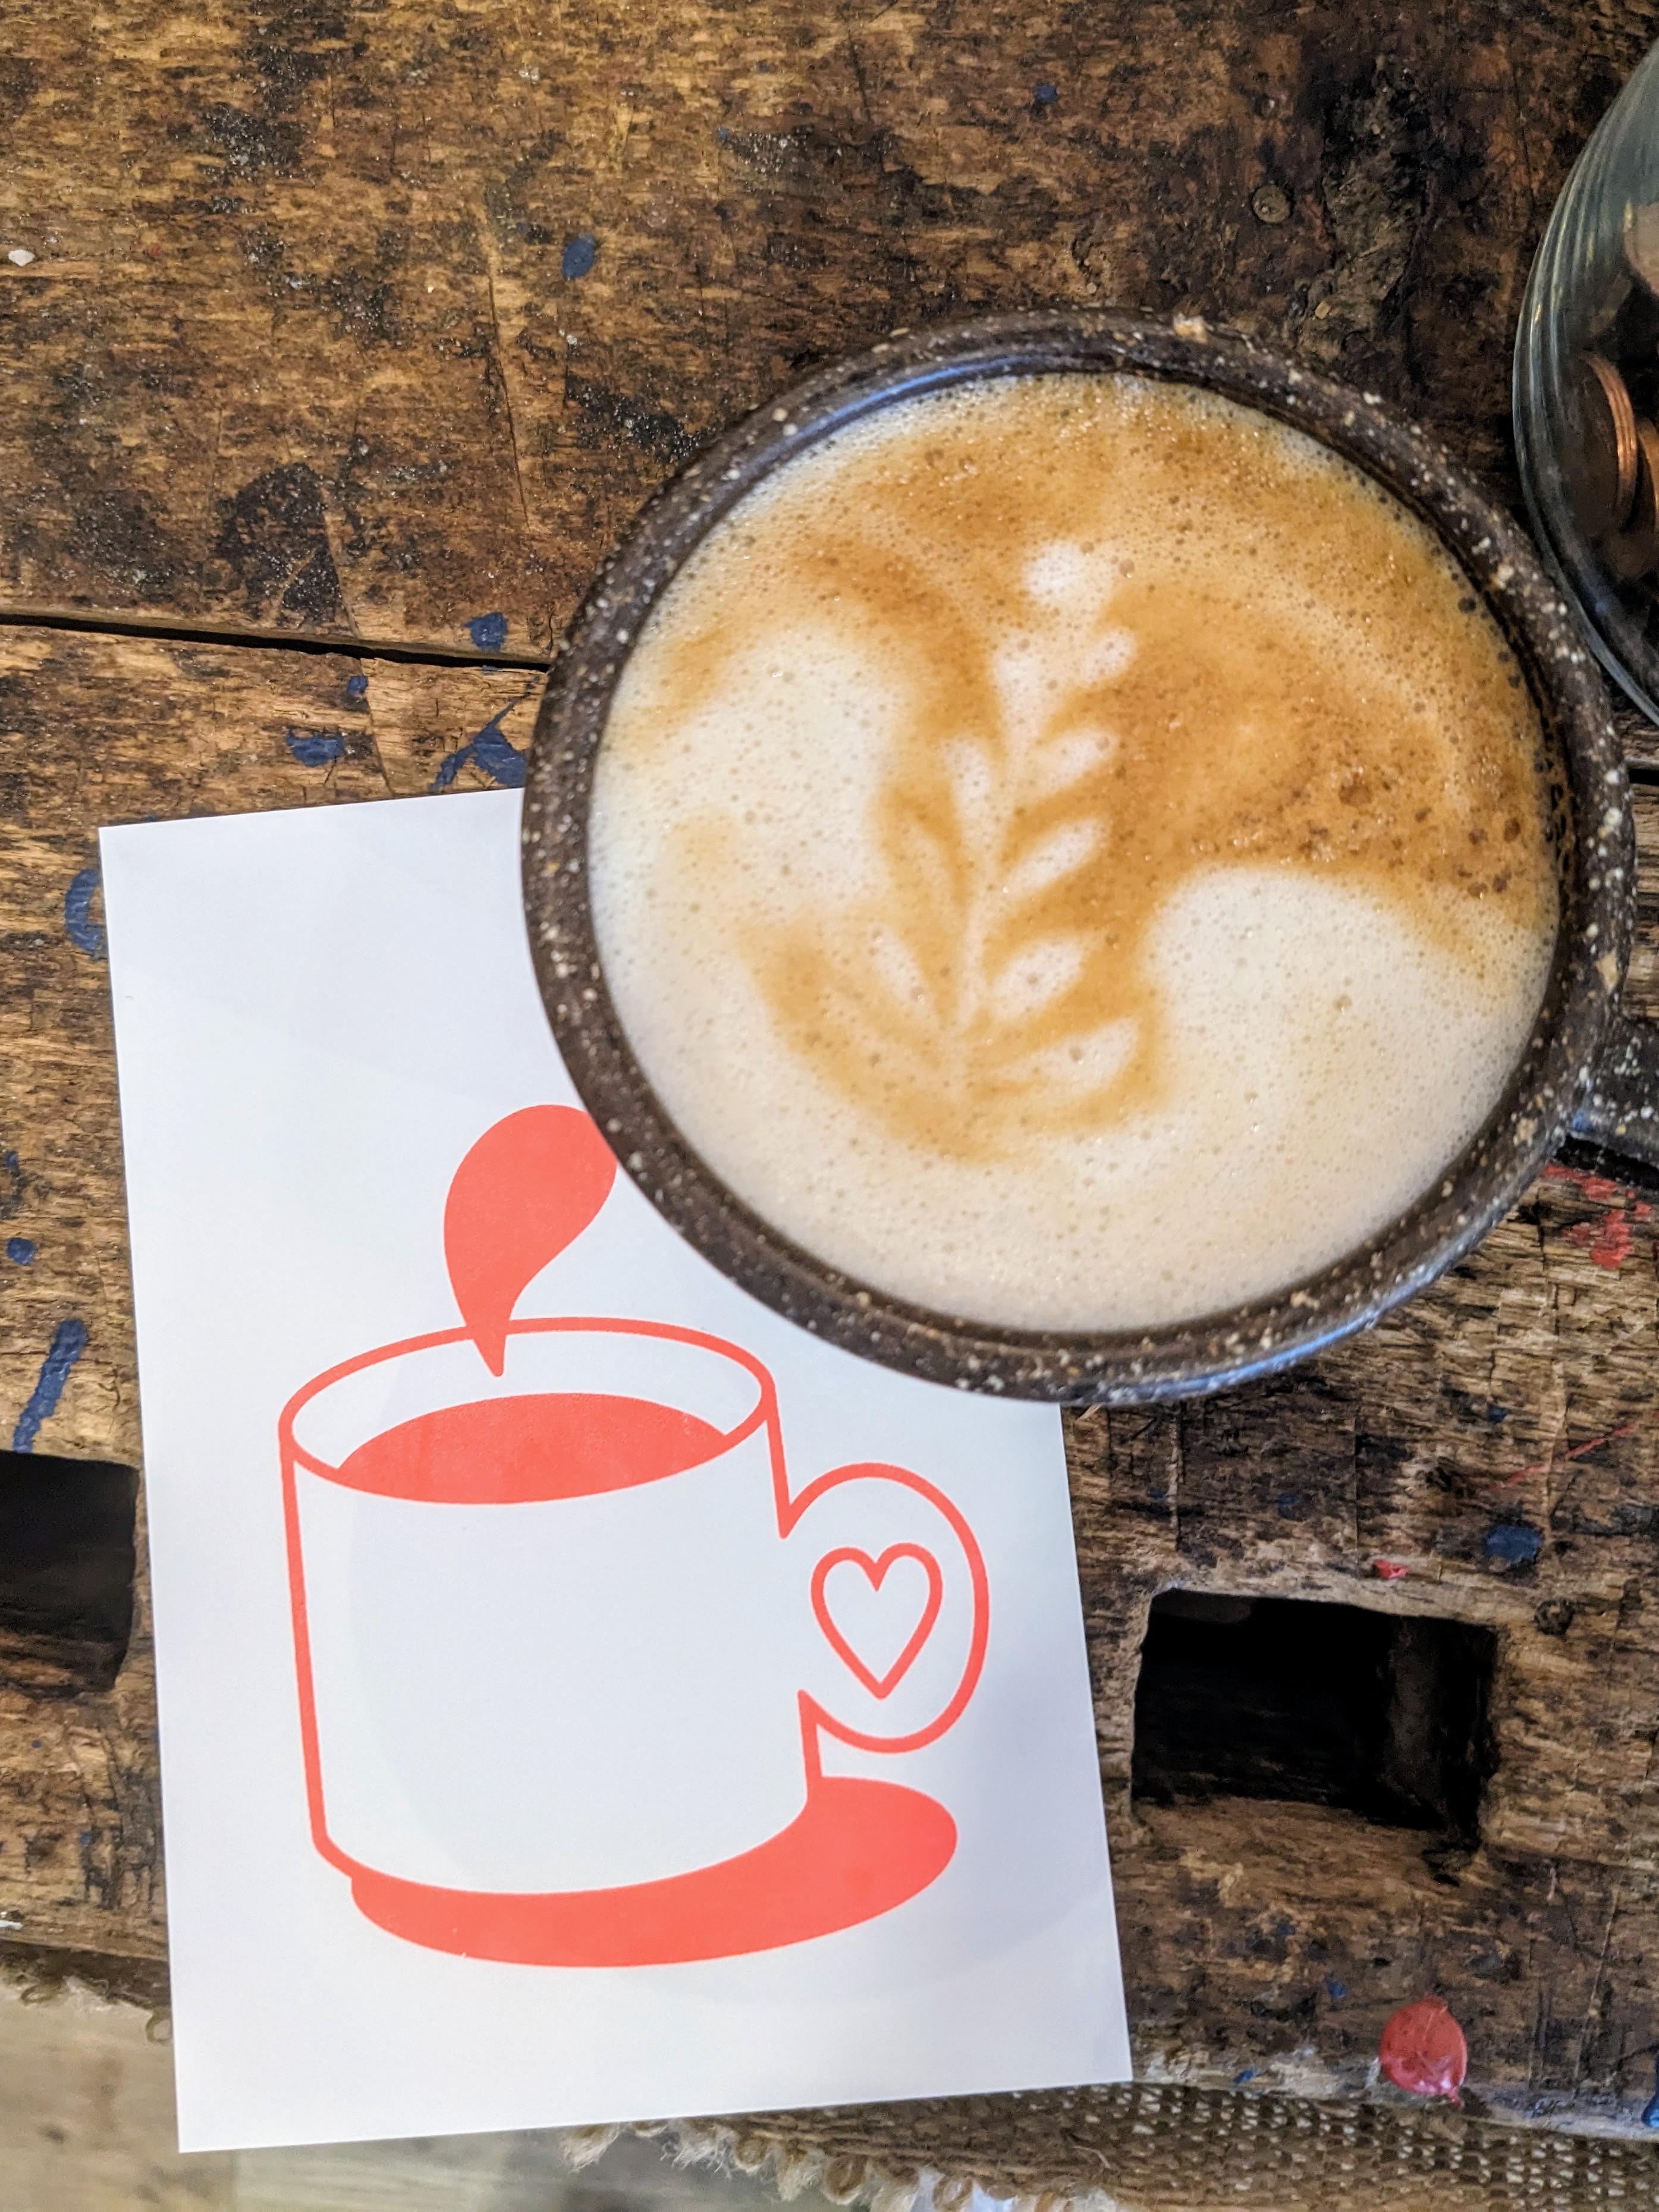 Schönen Start ins Osterwochenende ☕🐇🐥
#kaffee #coffee #gutenmorgen #butfirstcoffee #frühstück #lecker 